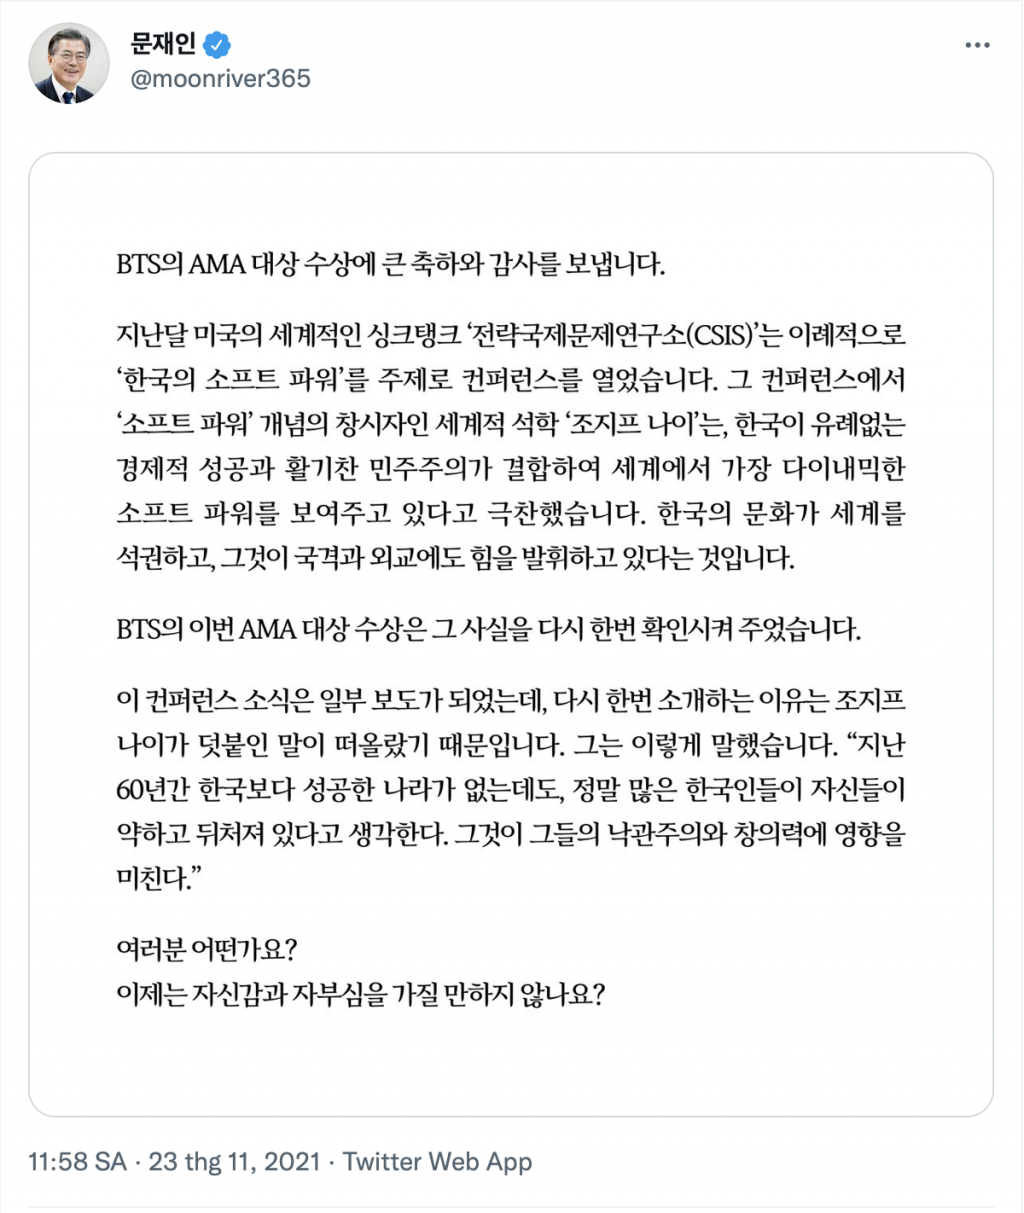 BTS nhận thư chúc mừng từ Tổng thống Hàn Quốc